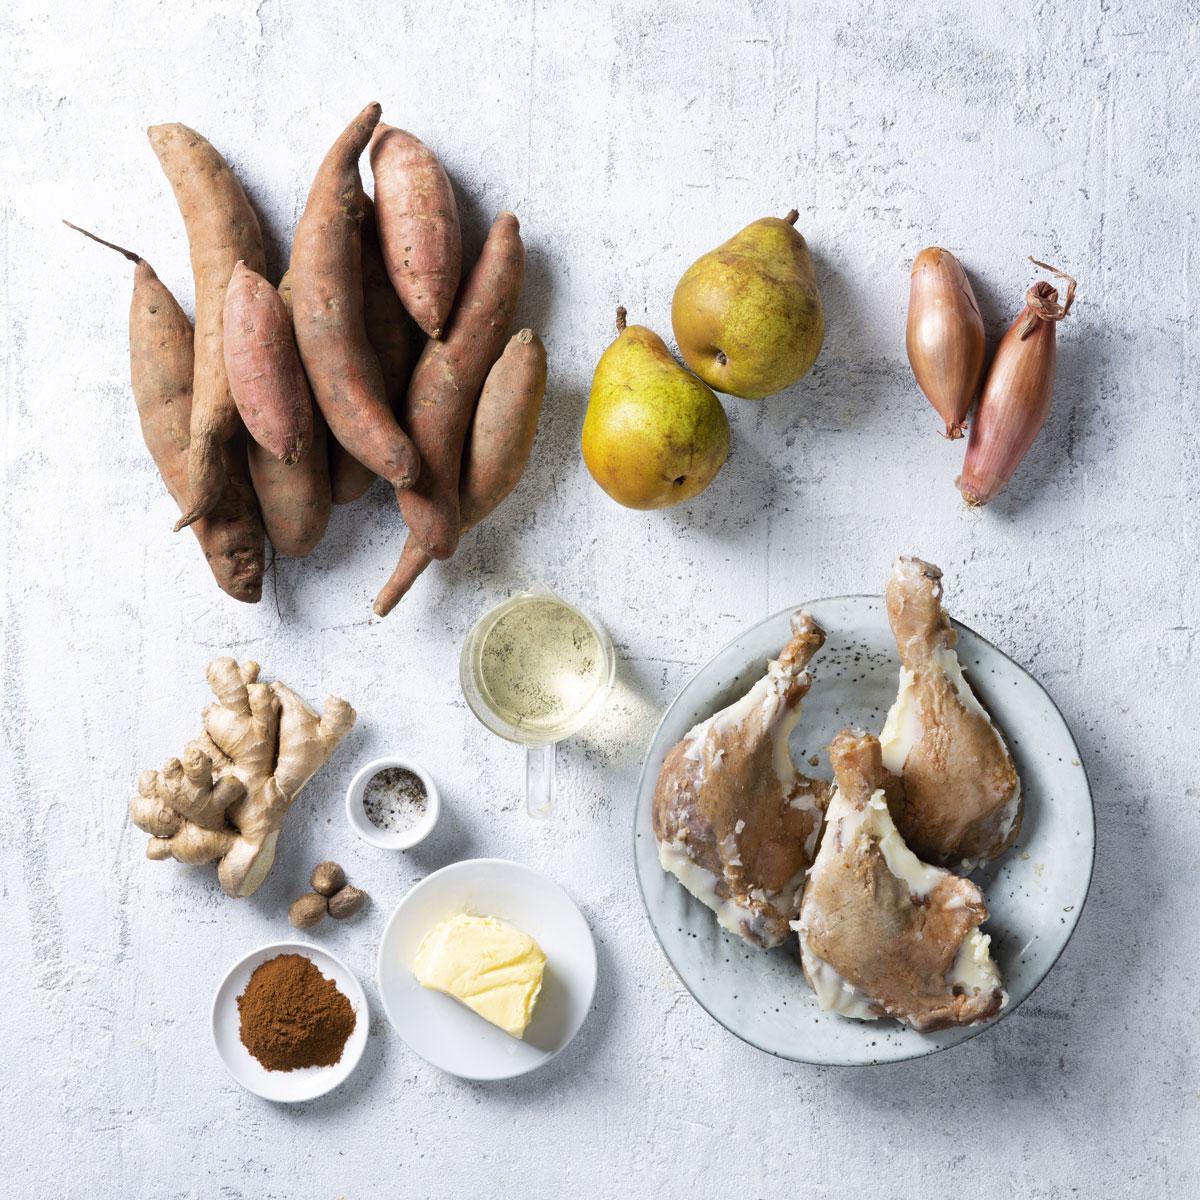 Confort food pour temps de crise: hachis parmentier au canard confit, poire et patate douce (recette)